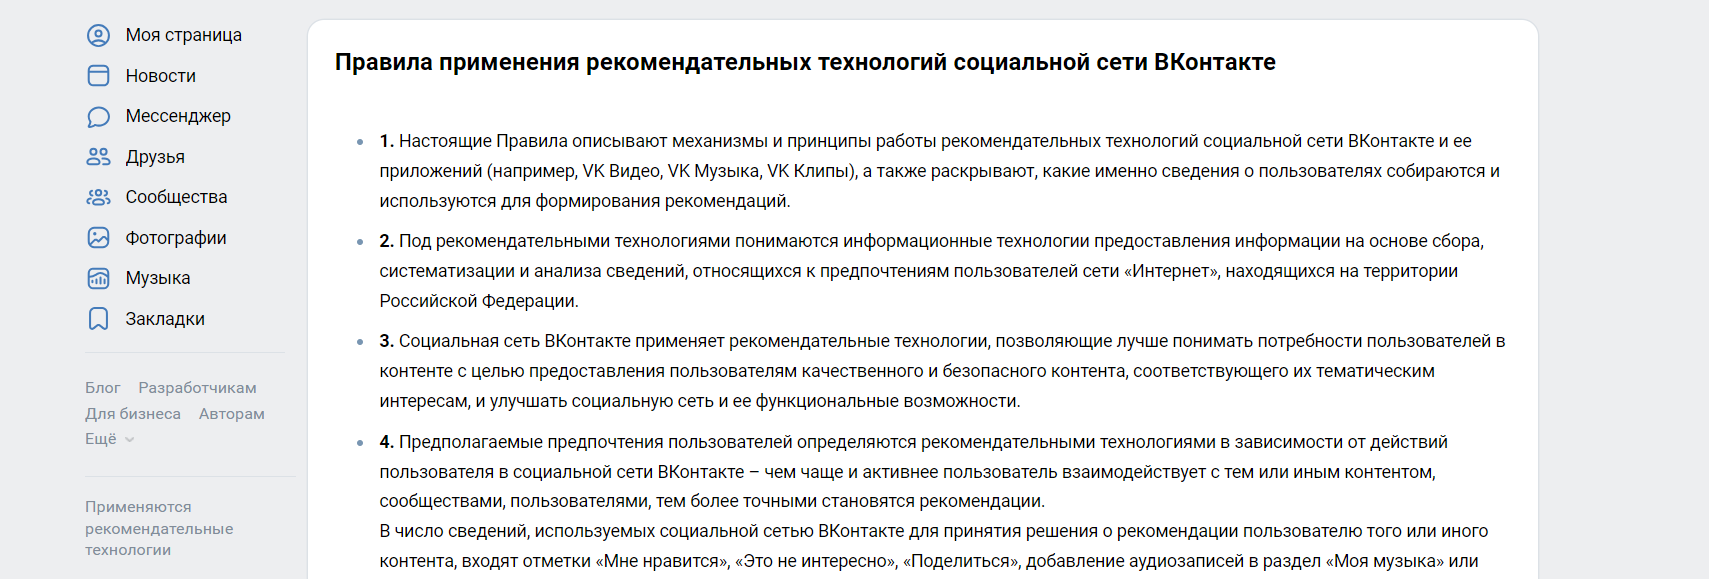 Как работают рекомендации ВКонтакте